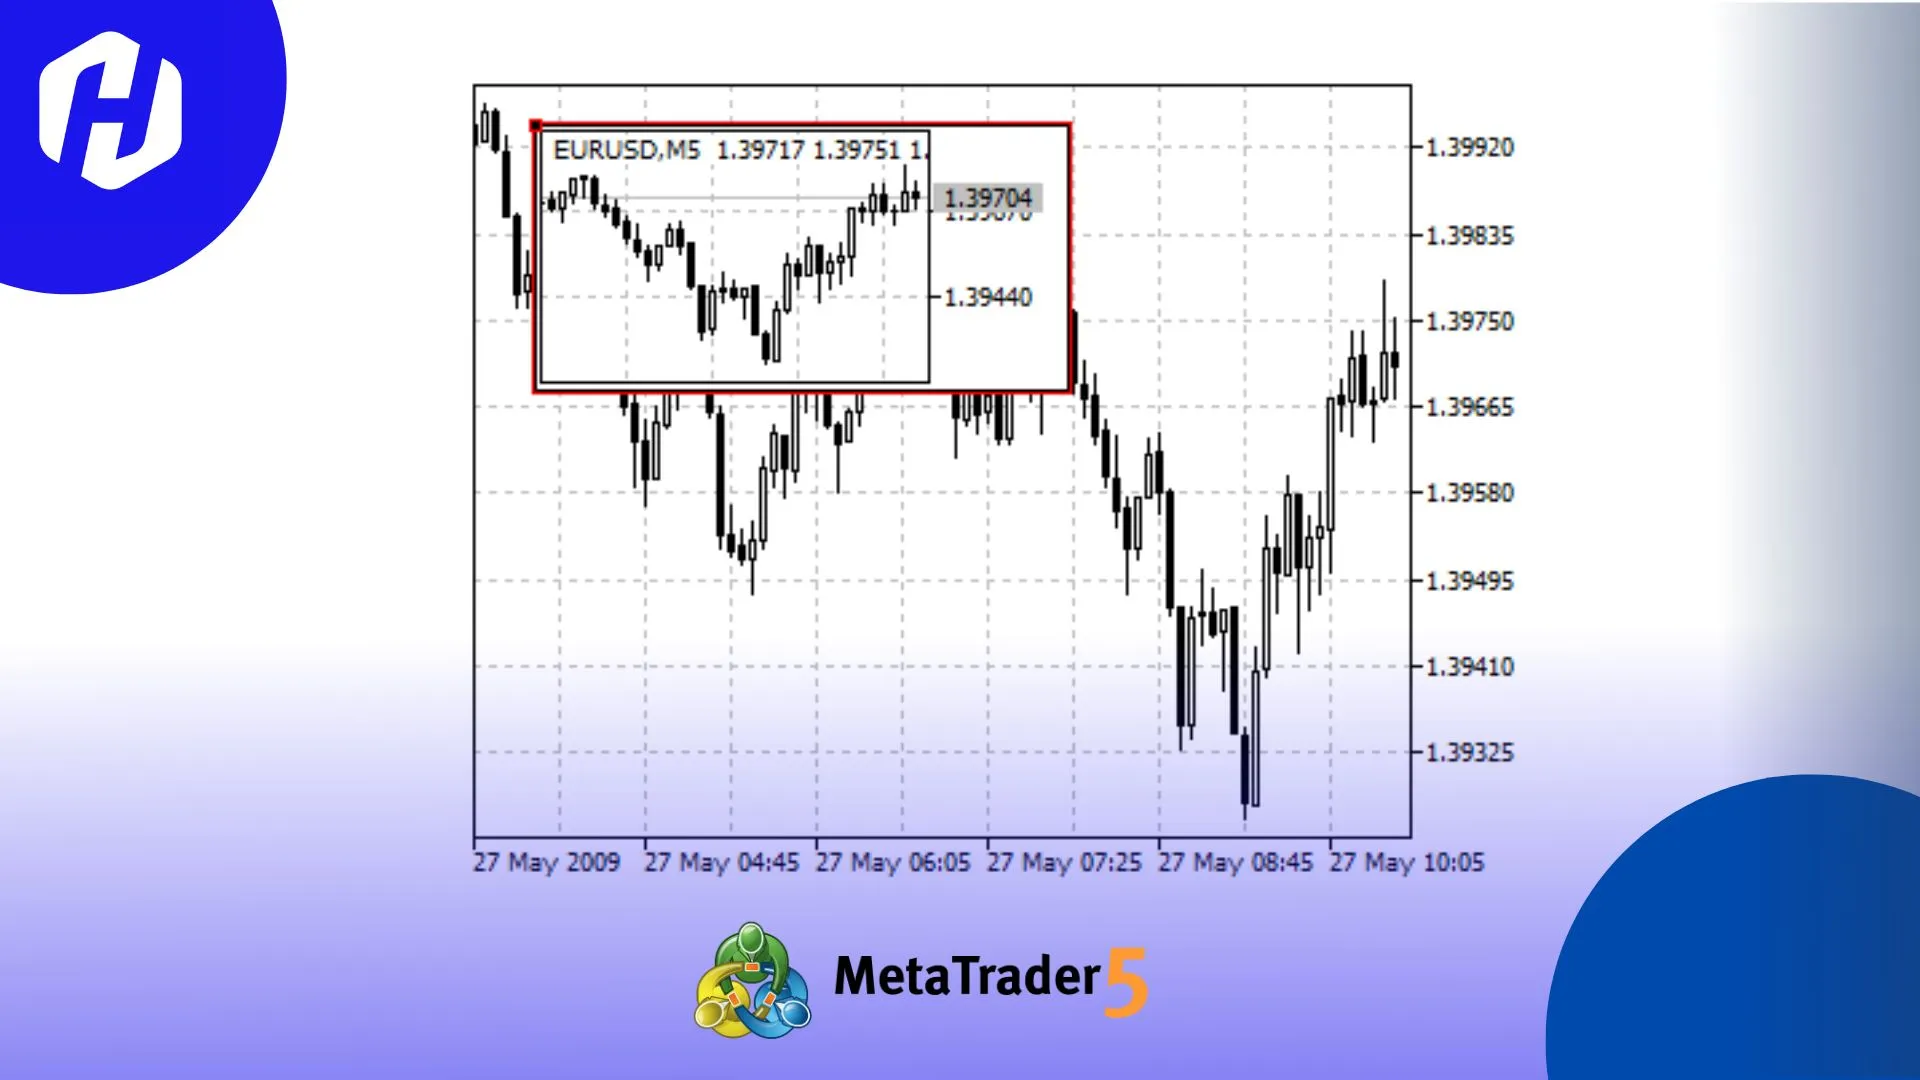 9 Objek Grafis MetaTrader 5 untuk Analisis Trading